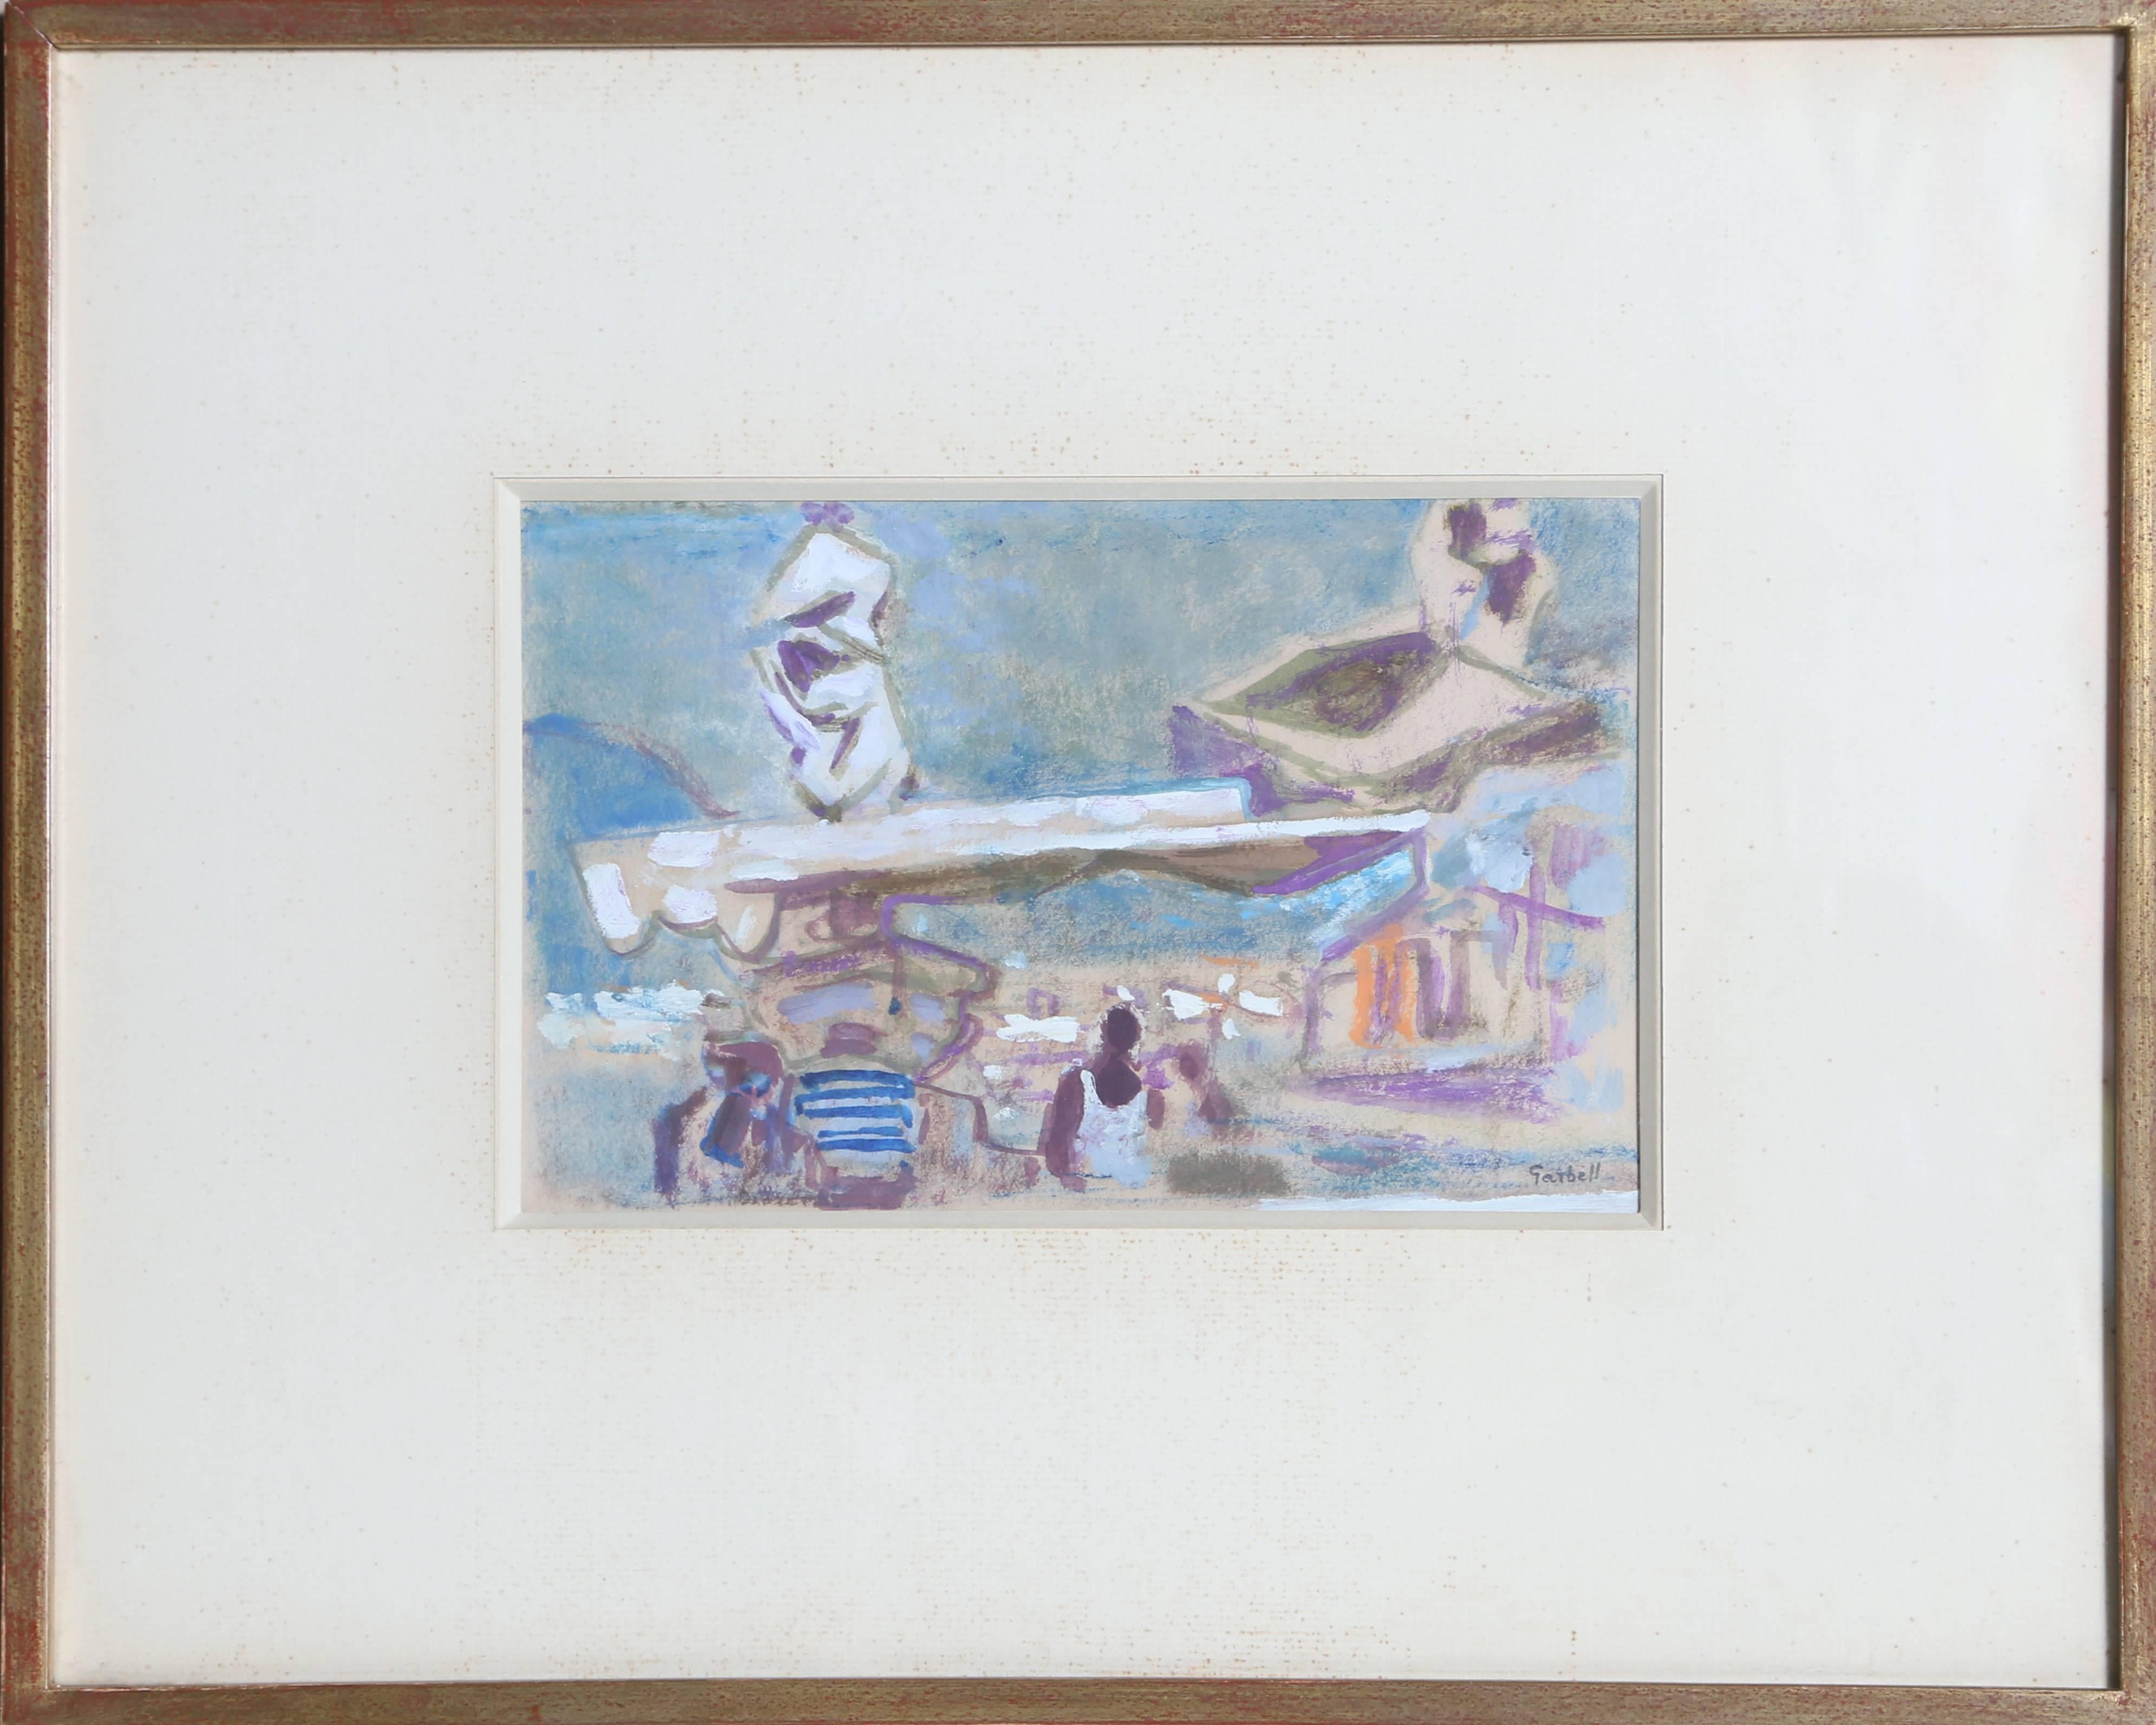 Künstler: Alexandre Sacha Garbell, Franzose (1903 - 1970)
Titel: Tropez
Jahr: ca. 1958
Medium: Gouache auf Papier, signiert 
Bildgröße: 6 x 9,5 Zoll
Rahmengröße: 14,5 x 18 Zoll